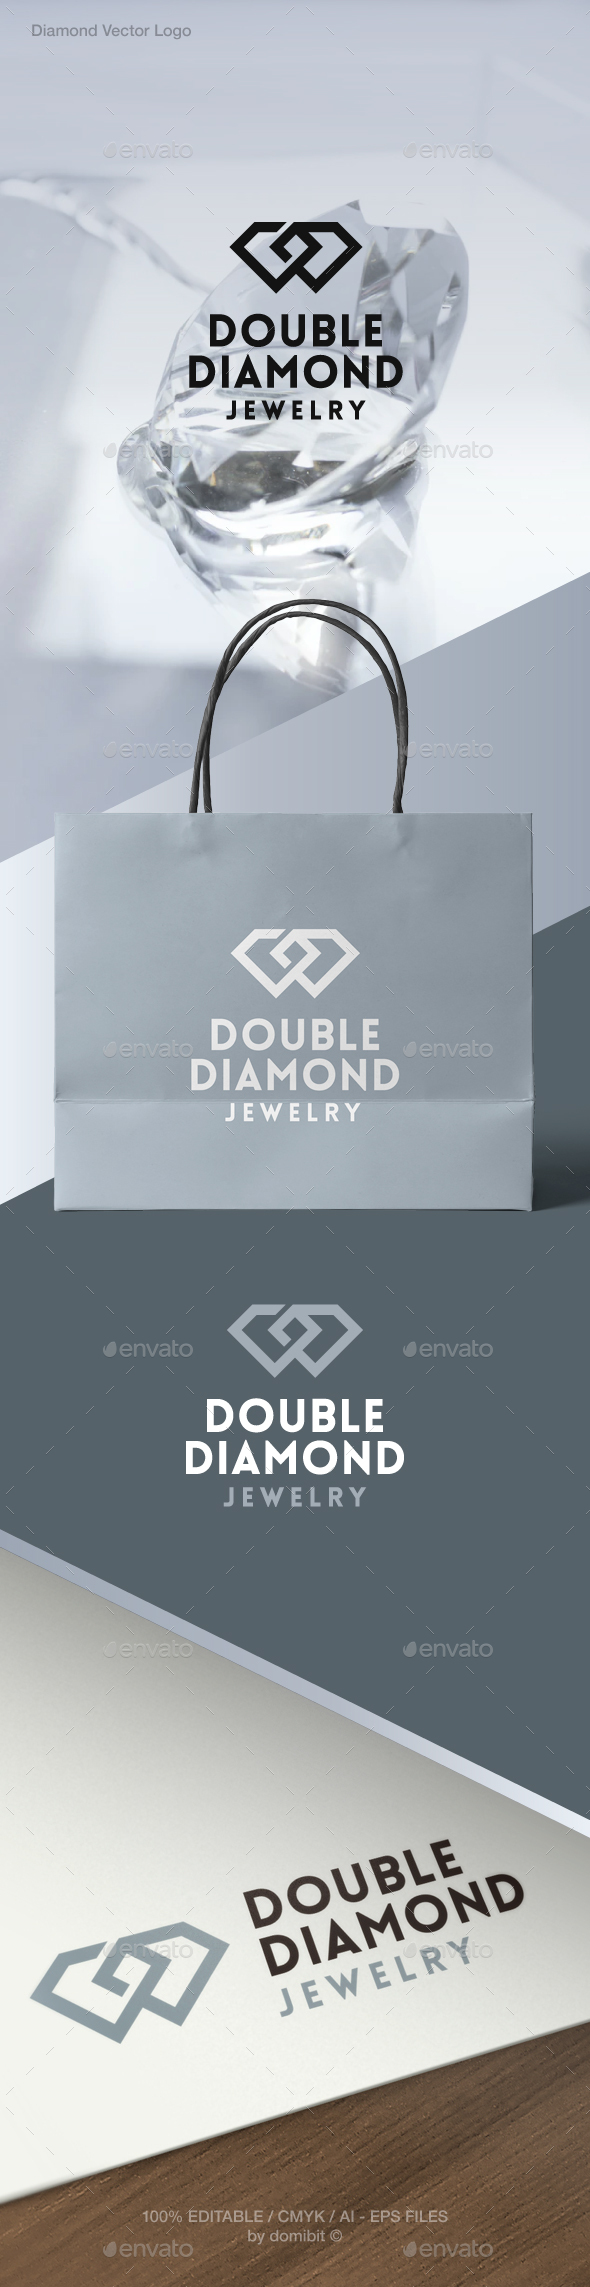 Diamond Jewelry Logo